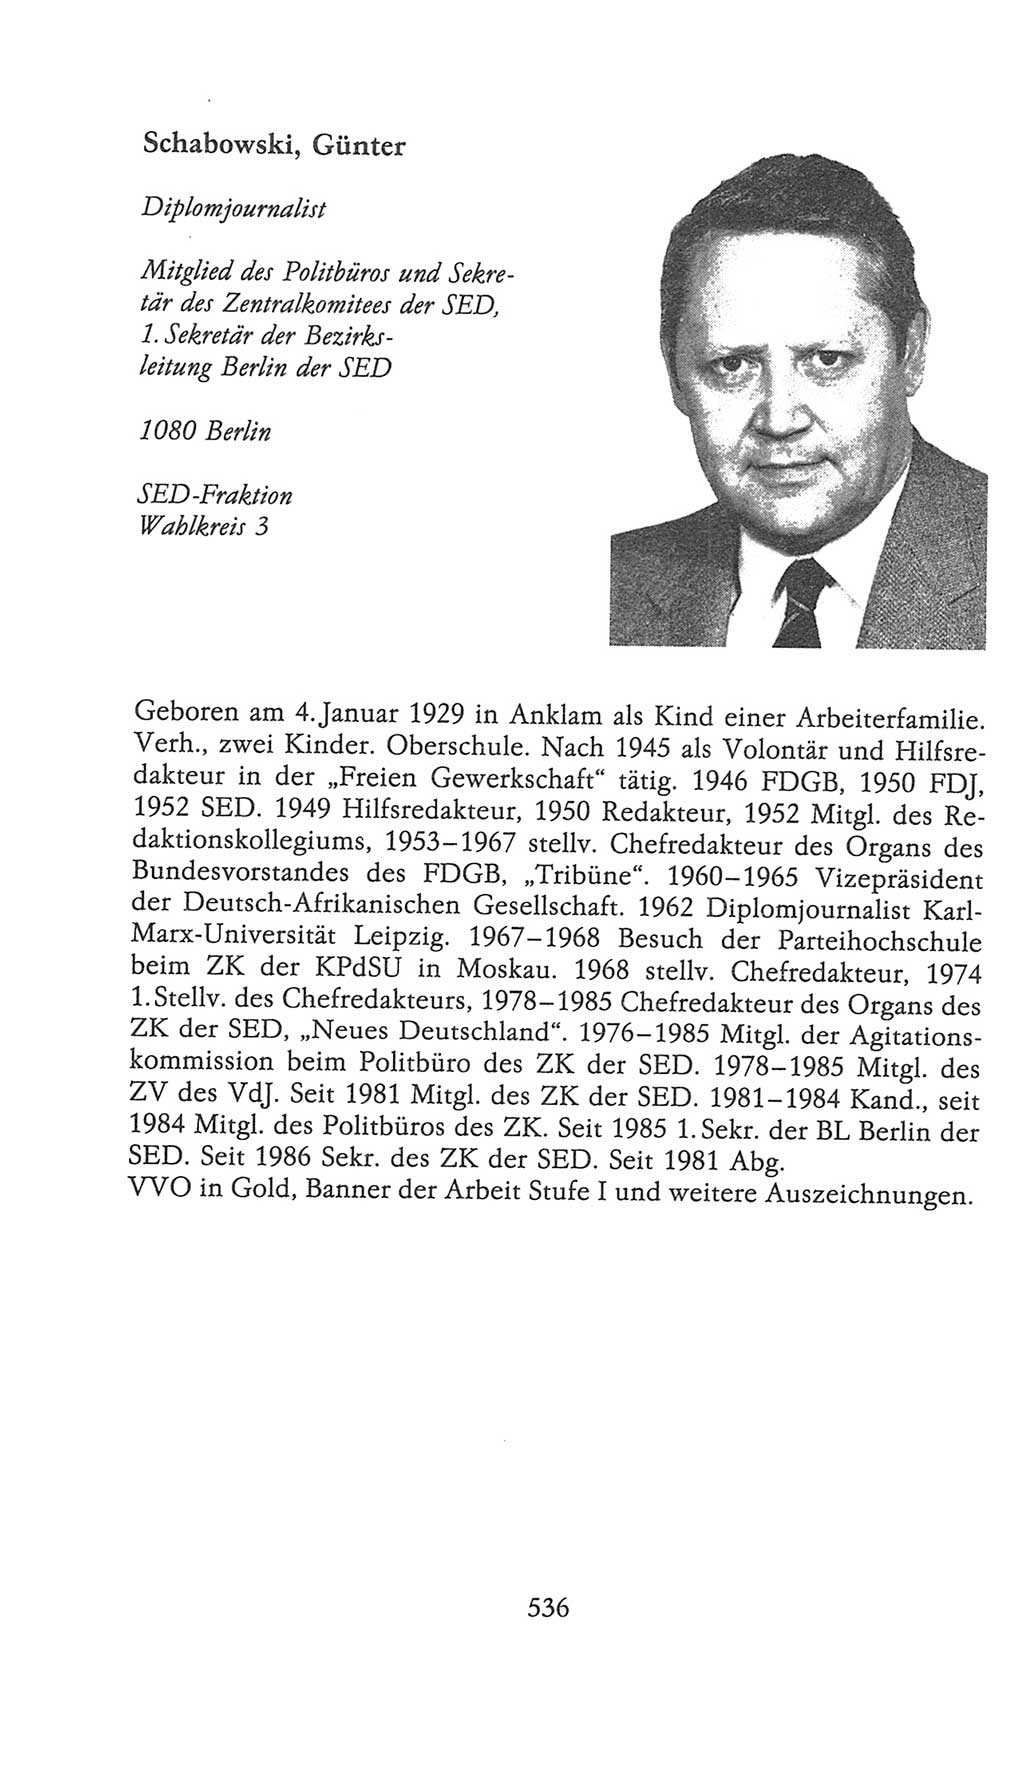 Volkskammer (VK) der Deutschen Demokratischen Republik (DDR), 9. Wahlperiode 1986-1990, Seite 536 (VK. DDR 9. WP. 1986-1990, S. 536)